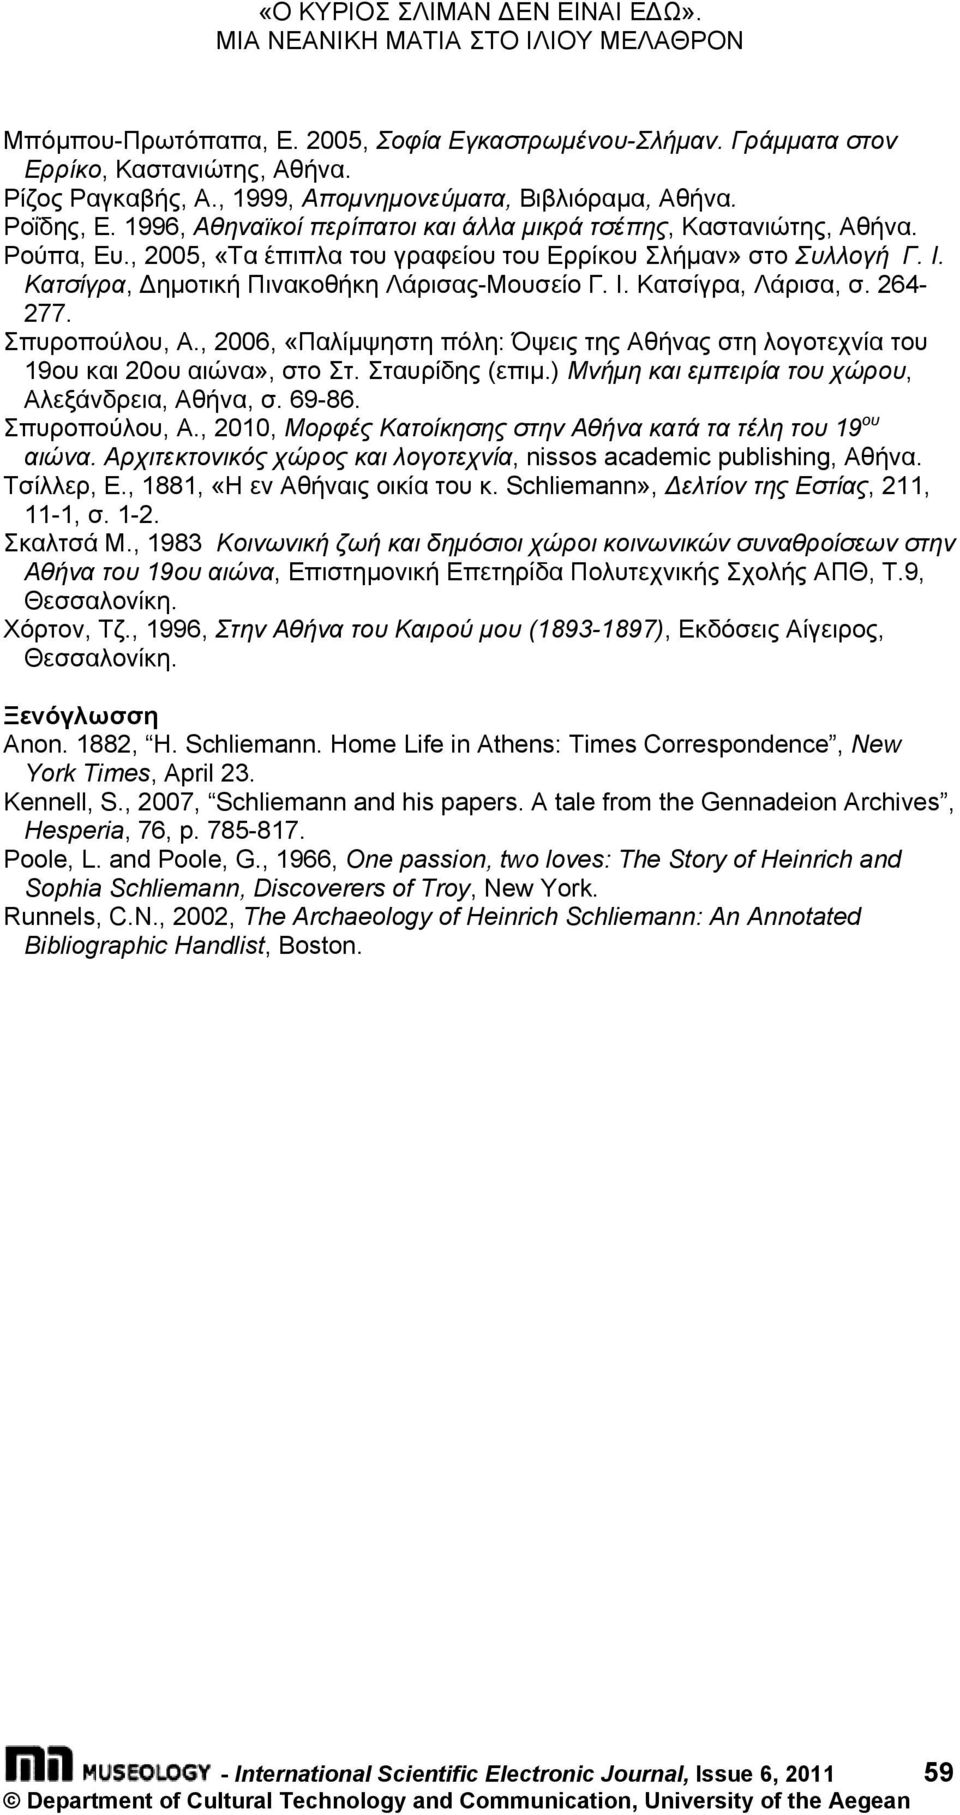 Ι. Κατσίγρα, Δημοτική Πινακοθήκη Λάρισας-Μουσείο Γ. Ι. Κατσίγρα, Λάρισα, σ. 264-277. Σπυροπούλου, Α., 2006, «Παλίμψηστη πόλη: Όψεις της Αθήνας στη λογοτεχνία του 19ου και 20ου αιώνα», στο Στ.